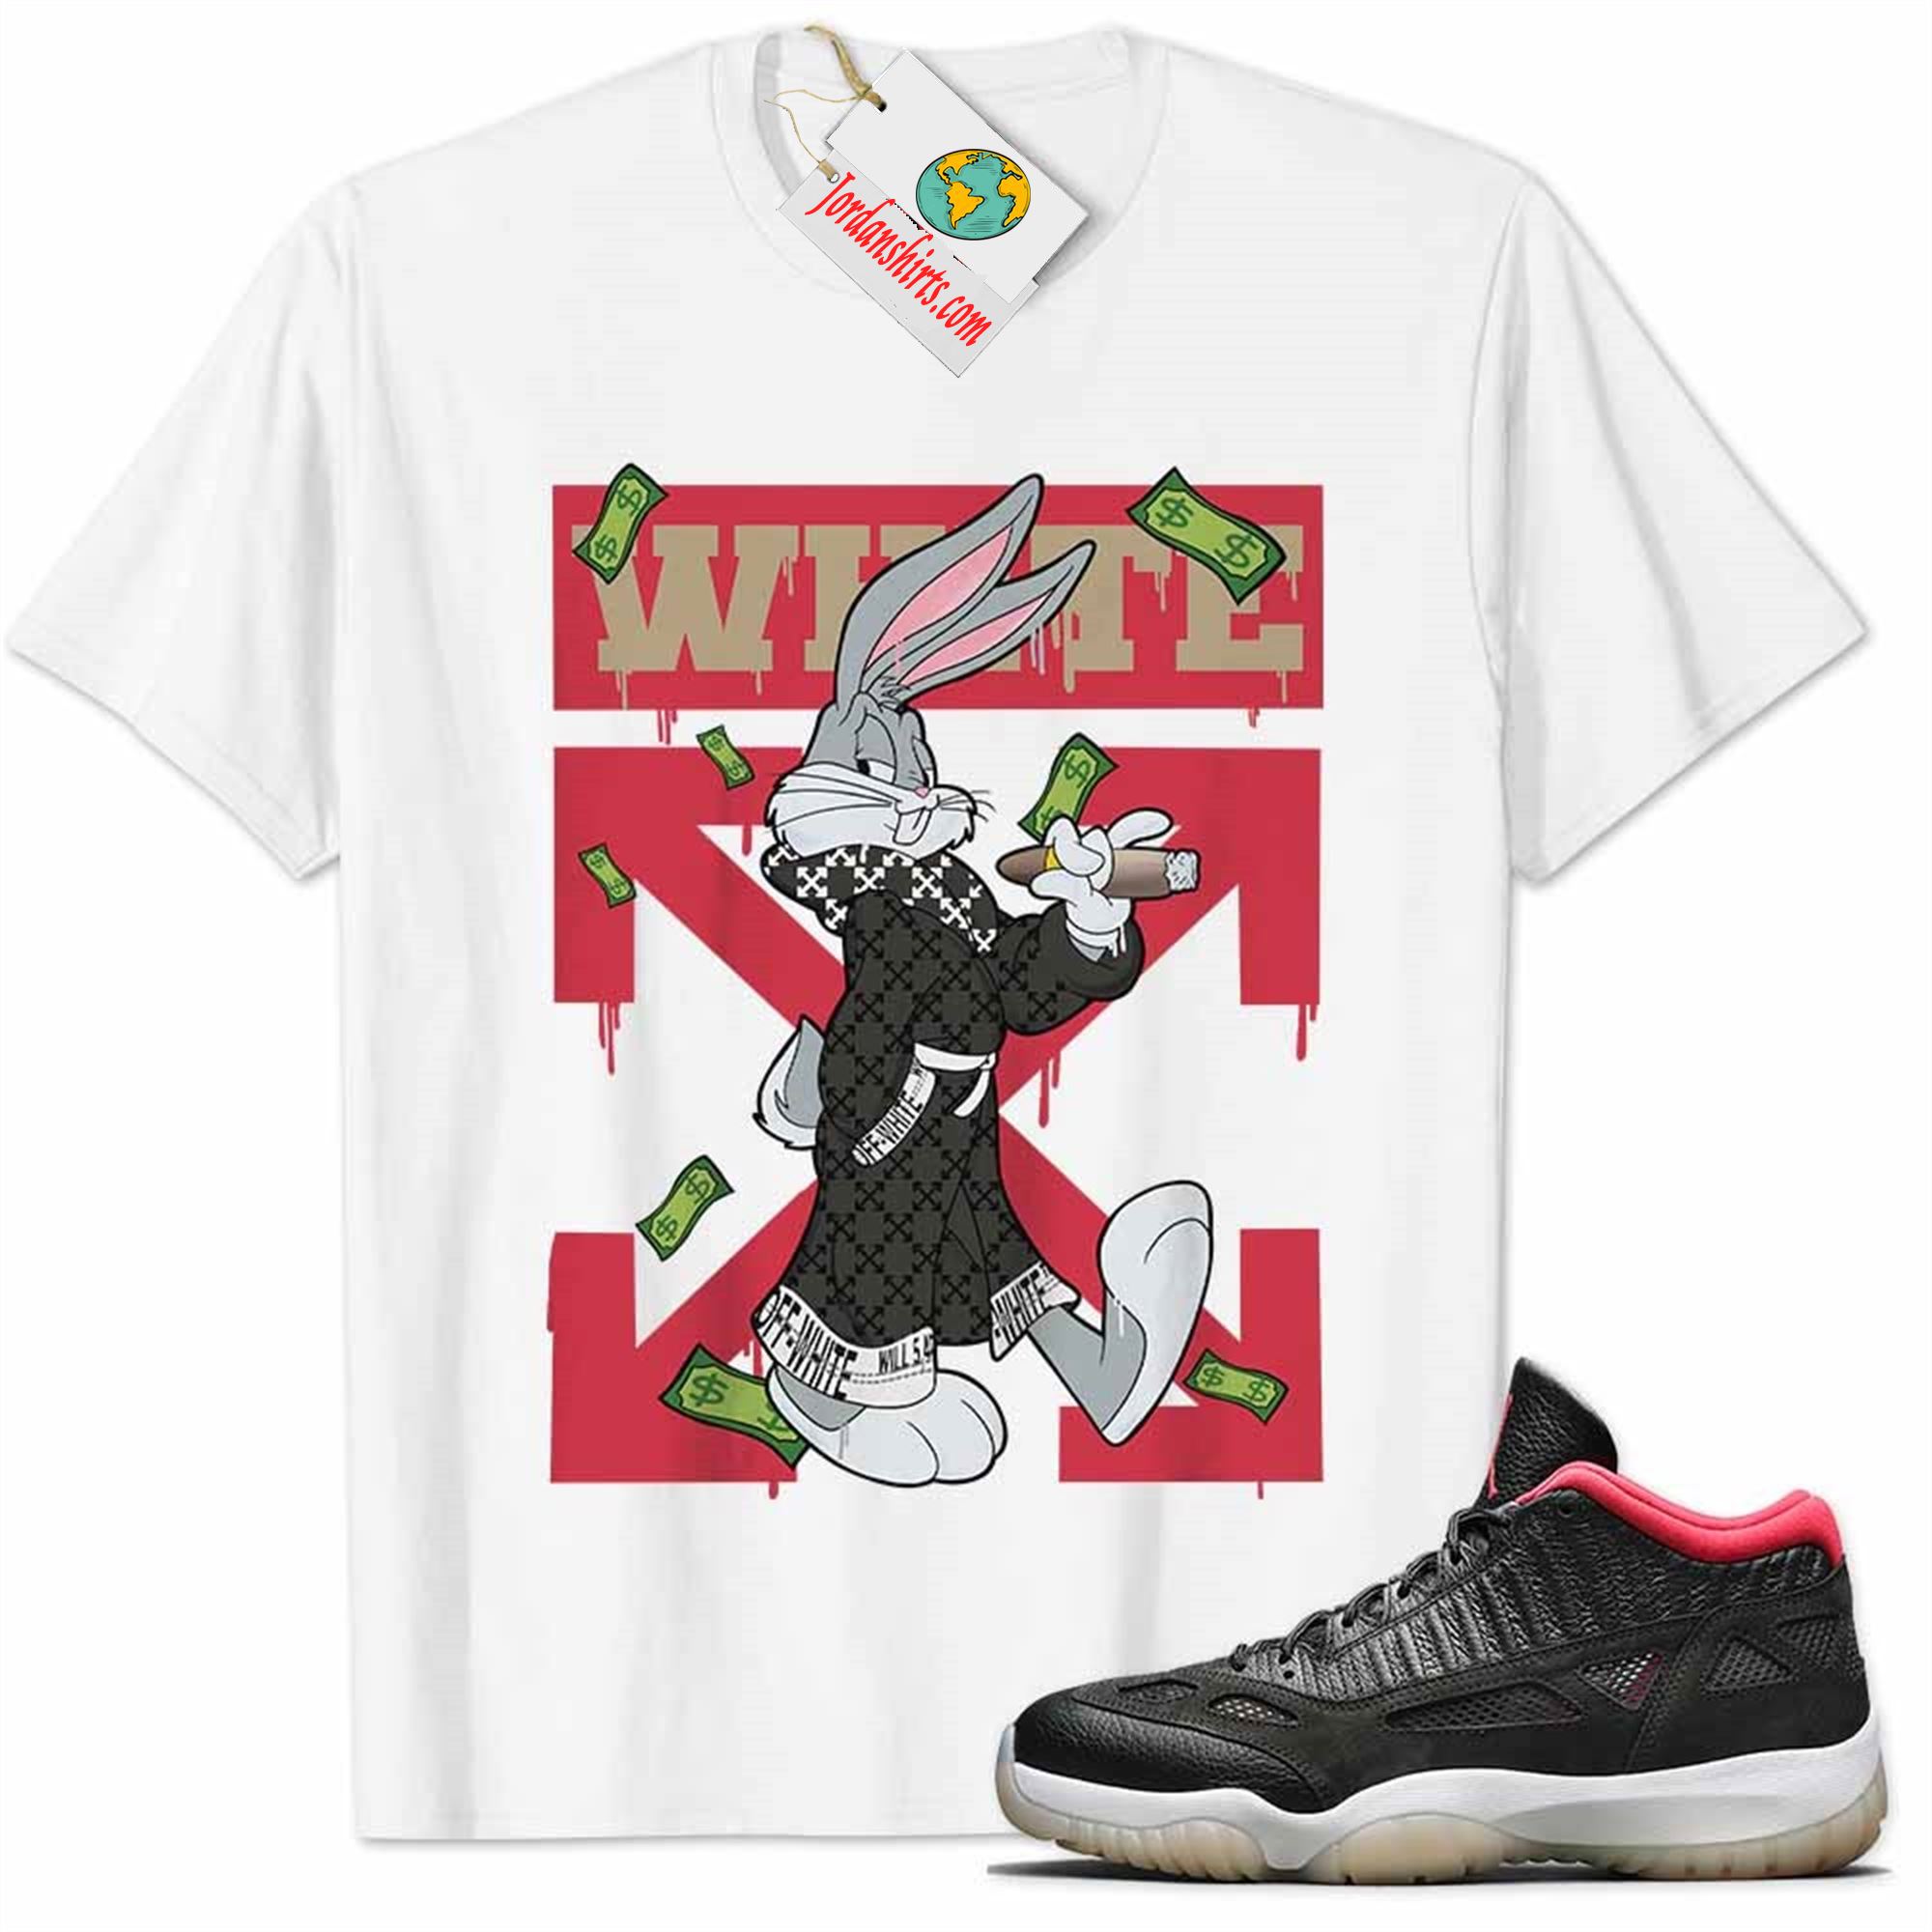 Jordan 11 Shirt, Jordan 11 Bred Shirt Bug Bunny Smokes Weed Money Falling White Plus Size Up To 5xl